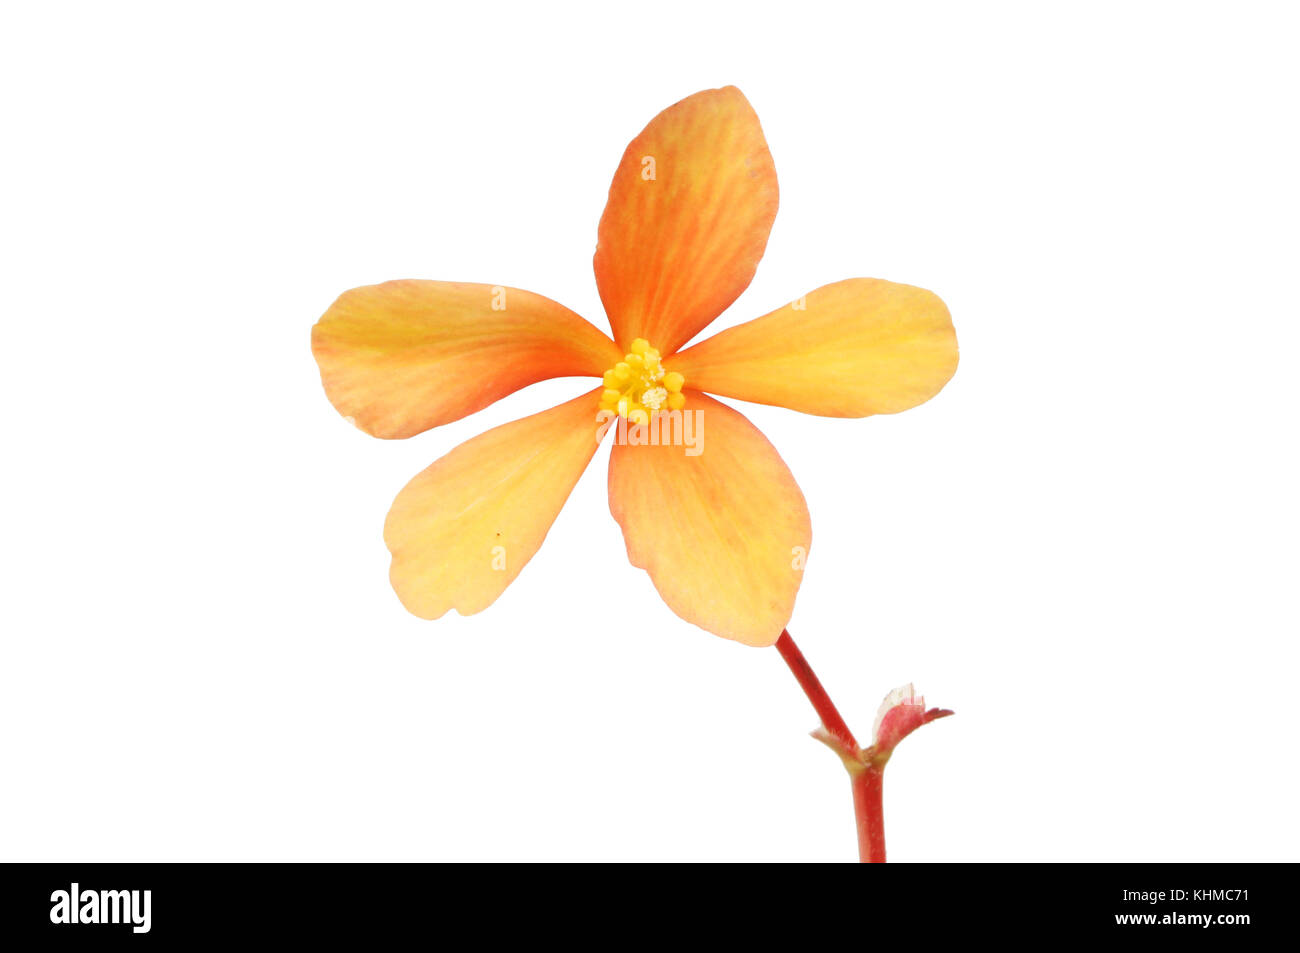 Orange begonia flower isolated against white Stock Photo